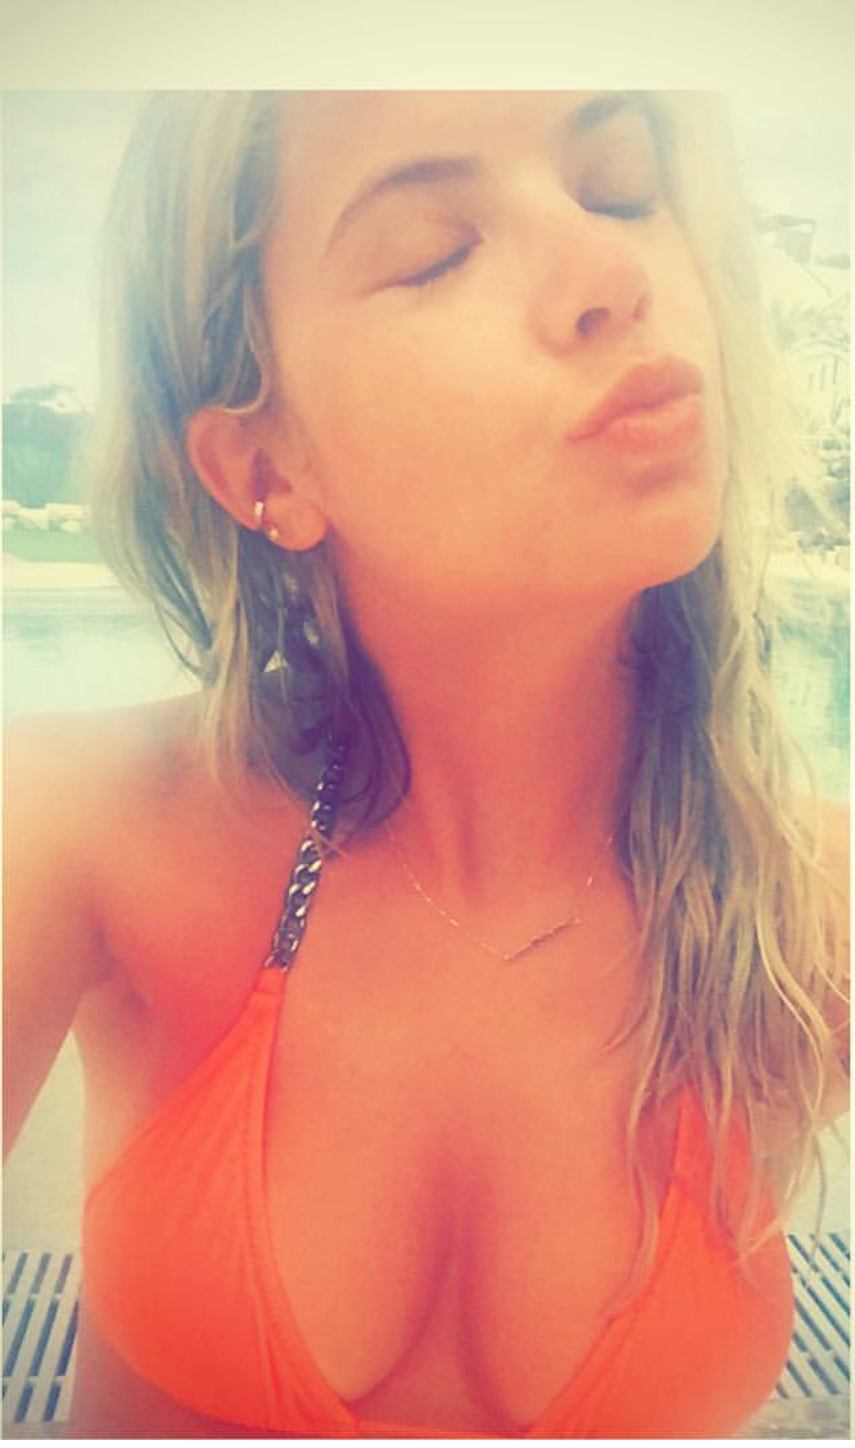 Leaked selfies of Ashley Benson